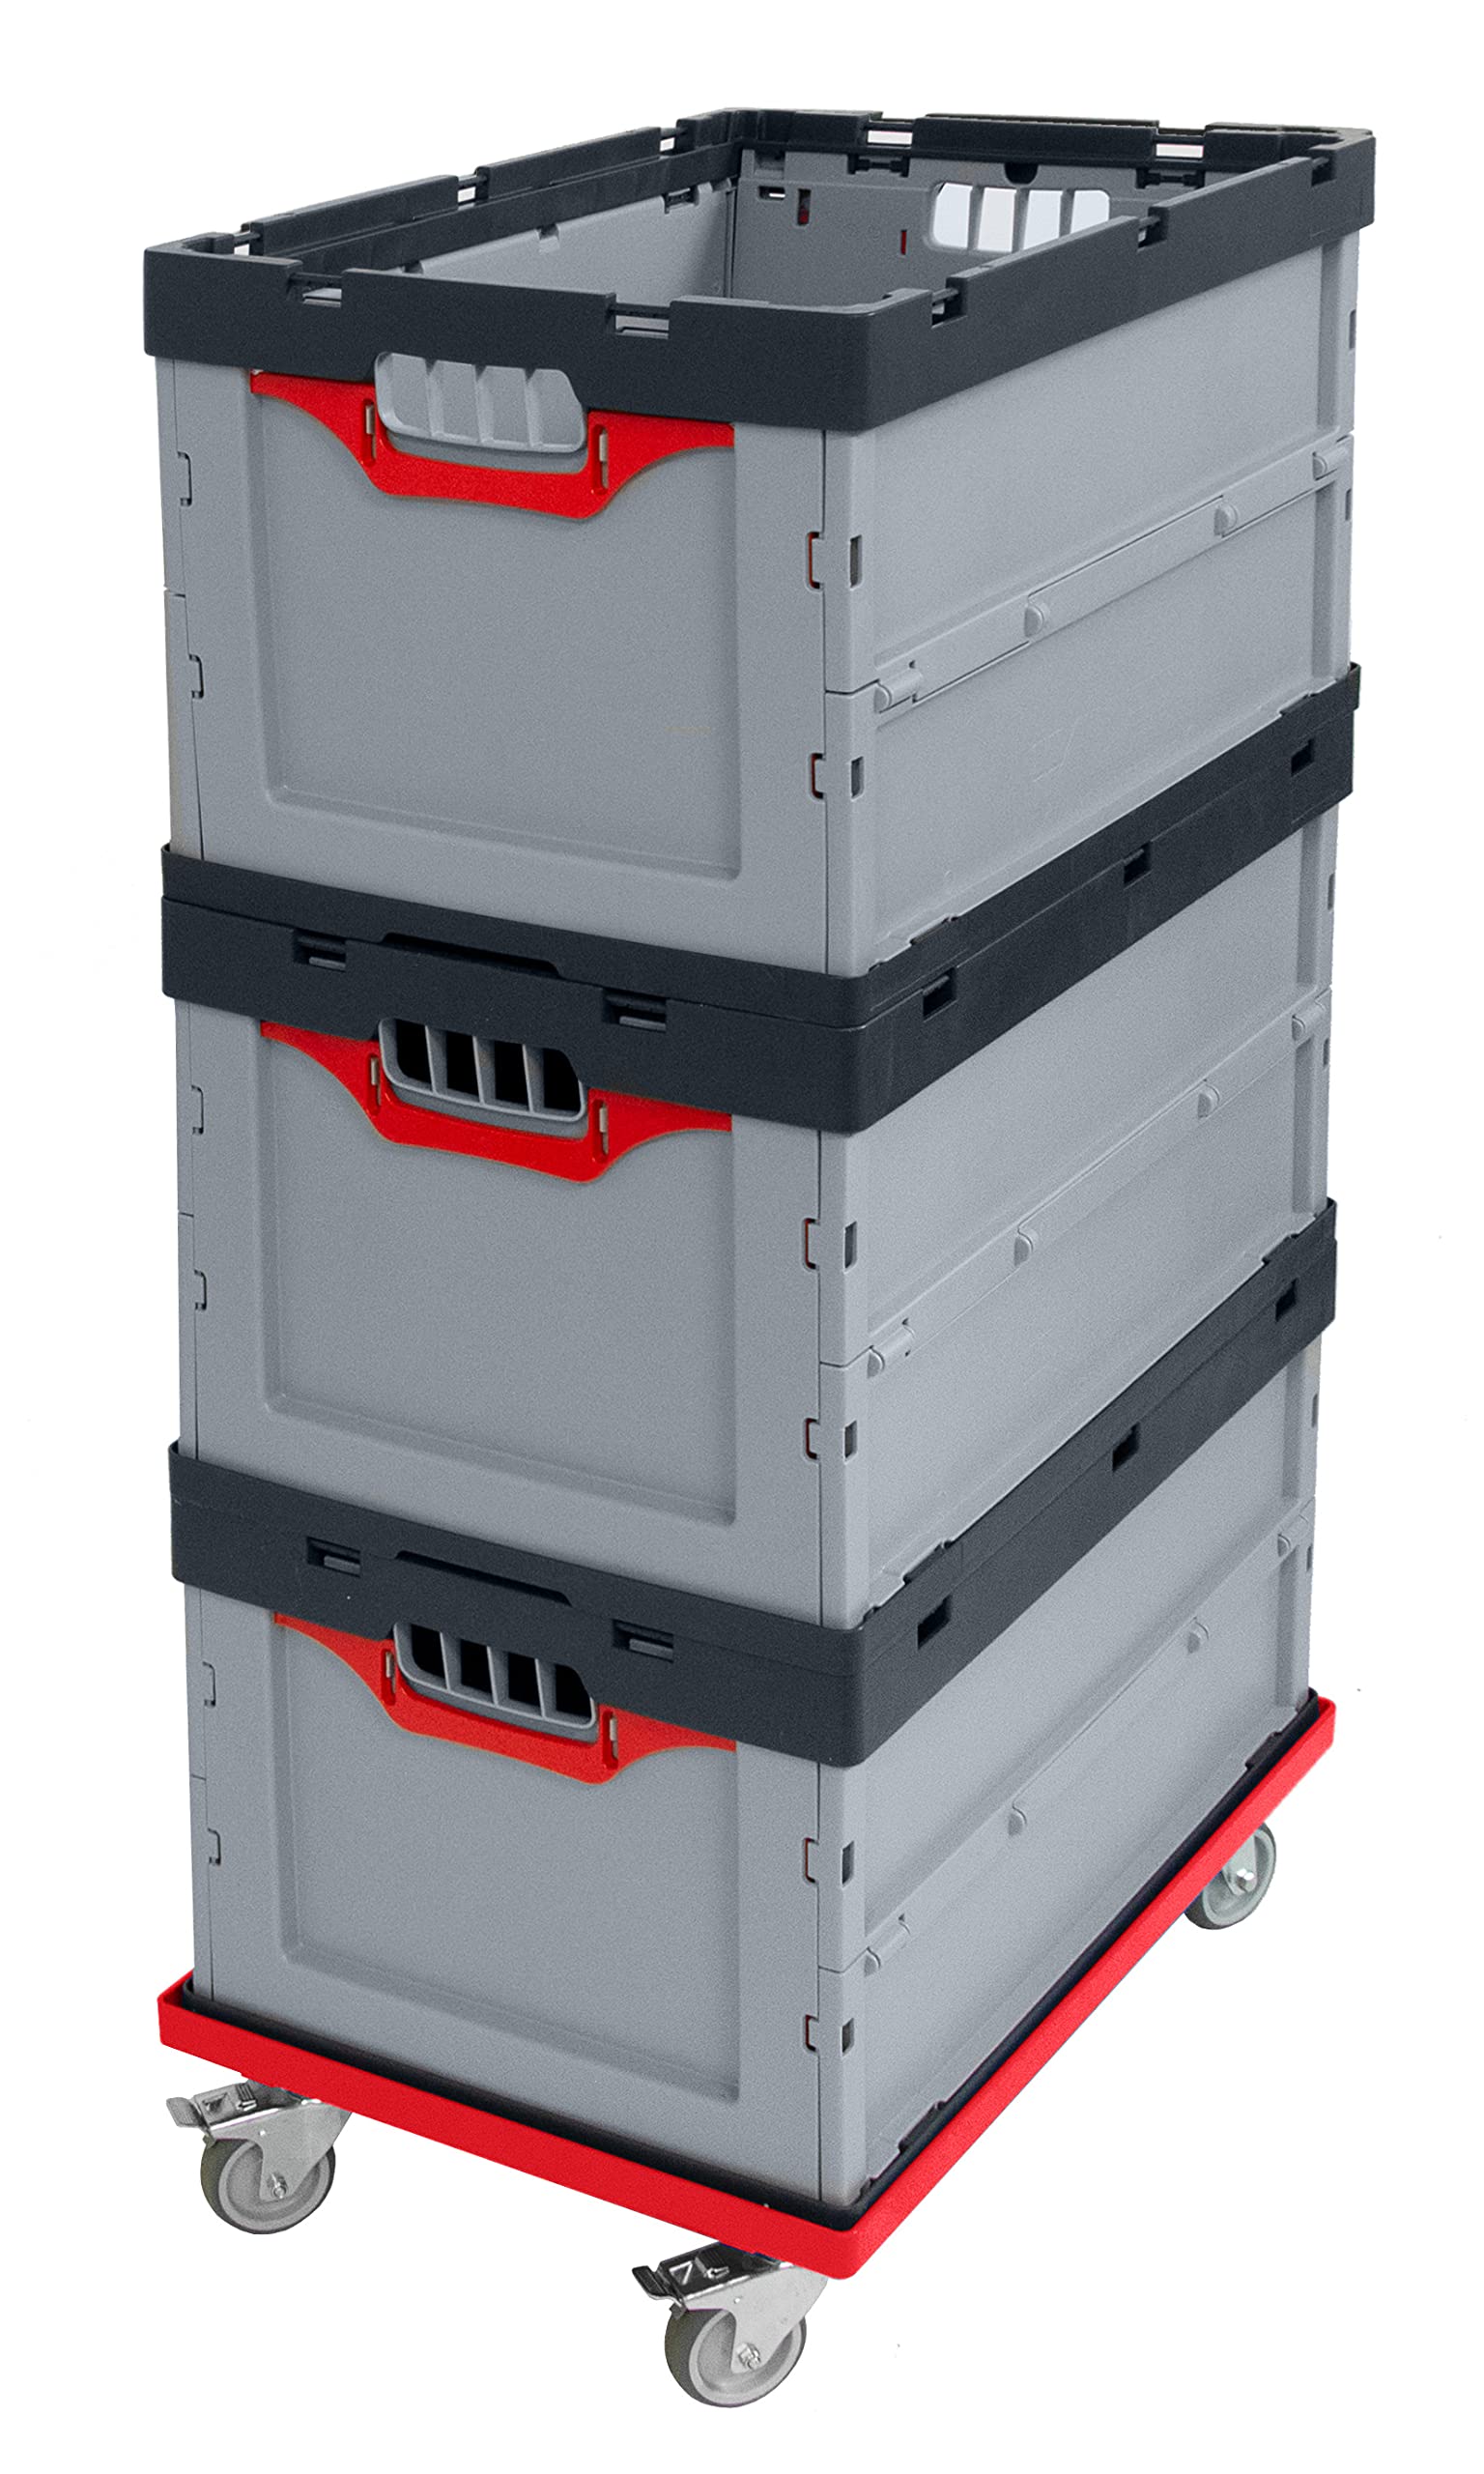 Auer Faltbox 3er Set + roter Rollwagen FB 64/32 | Angebotspaket: 3 Kunststoffboxen 60x40x32cm, 67L + Transportroller mit Lenkrollen | Faltboxen klappbar und stapelbar für Lager und Transport